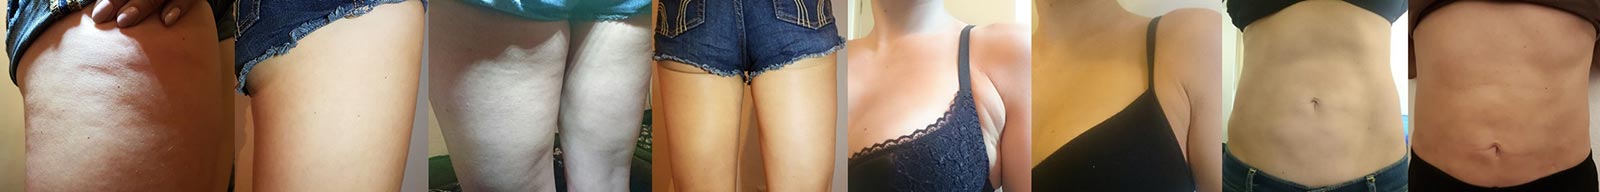 Test Byebye Cellulite Von Dr Juchheim Cosmetics Cellulite Killer Oder Bloss Fake Die Beautybloggerin